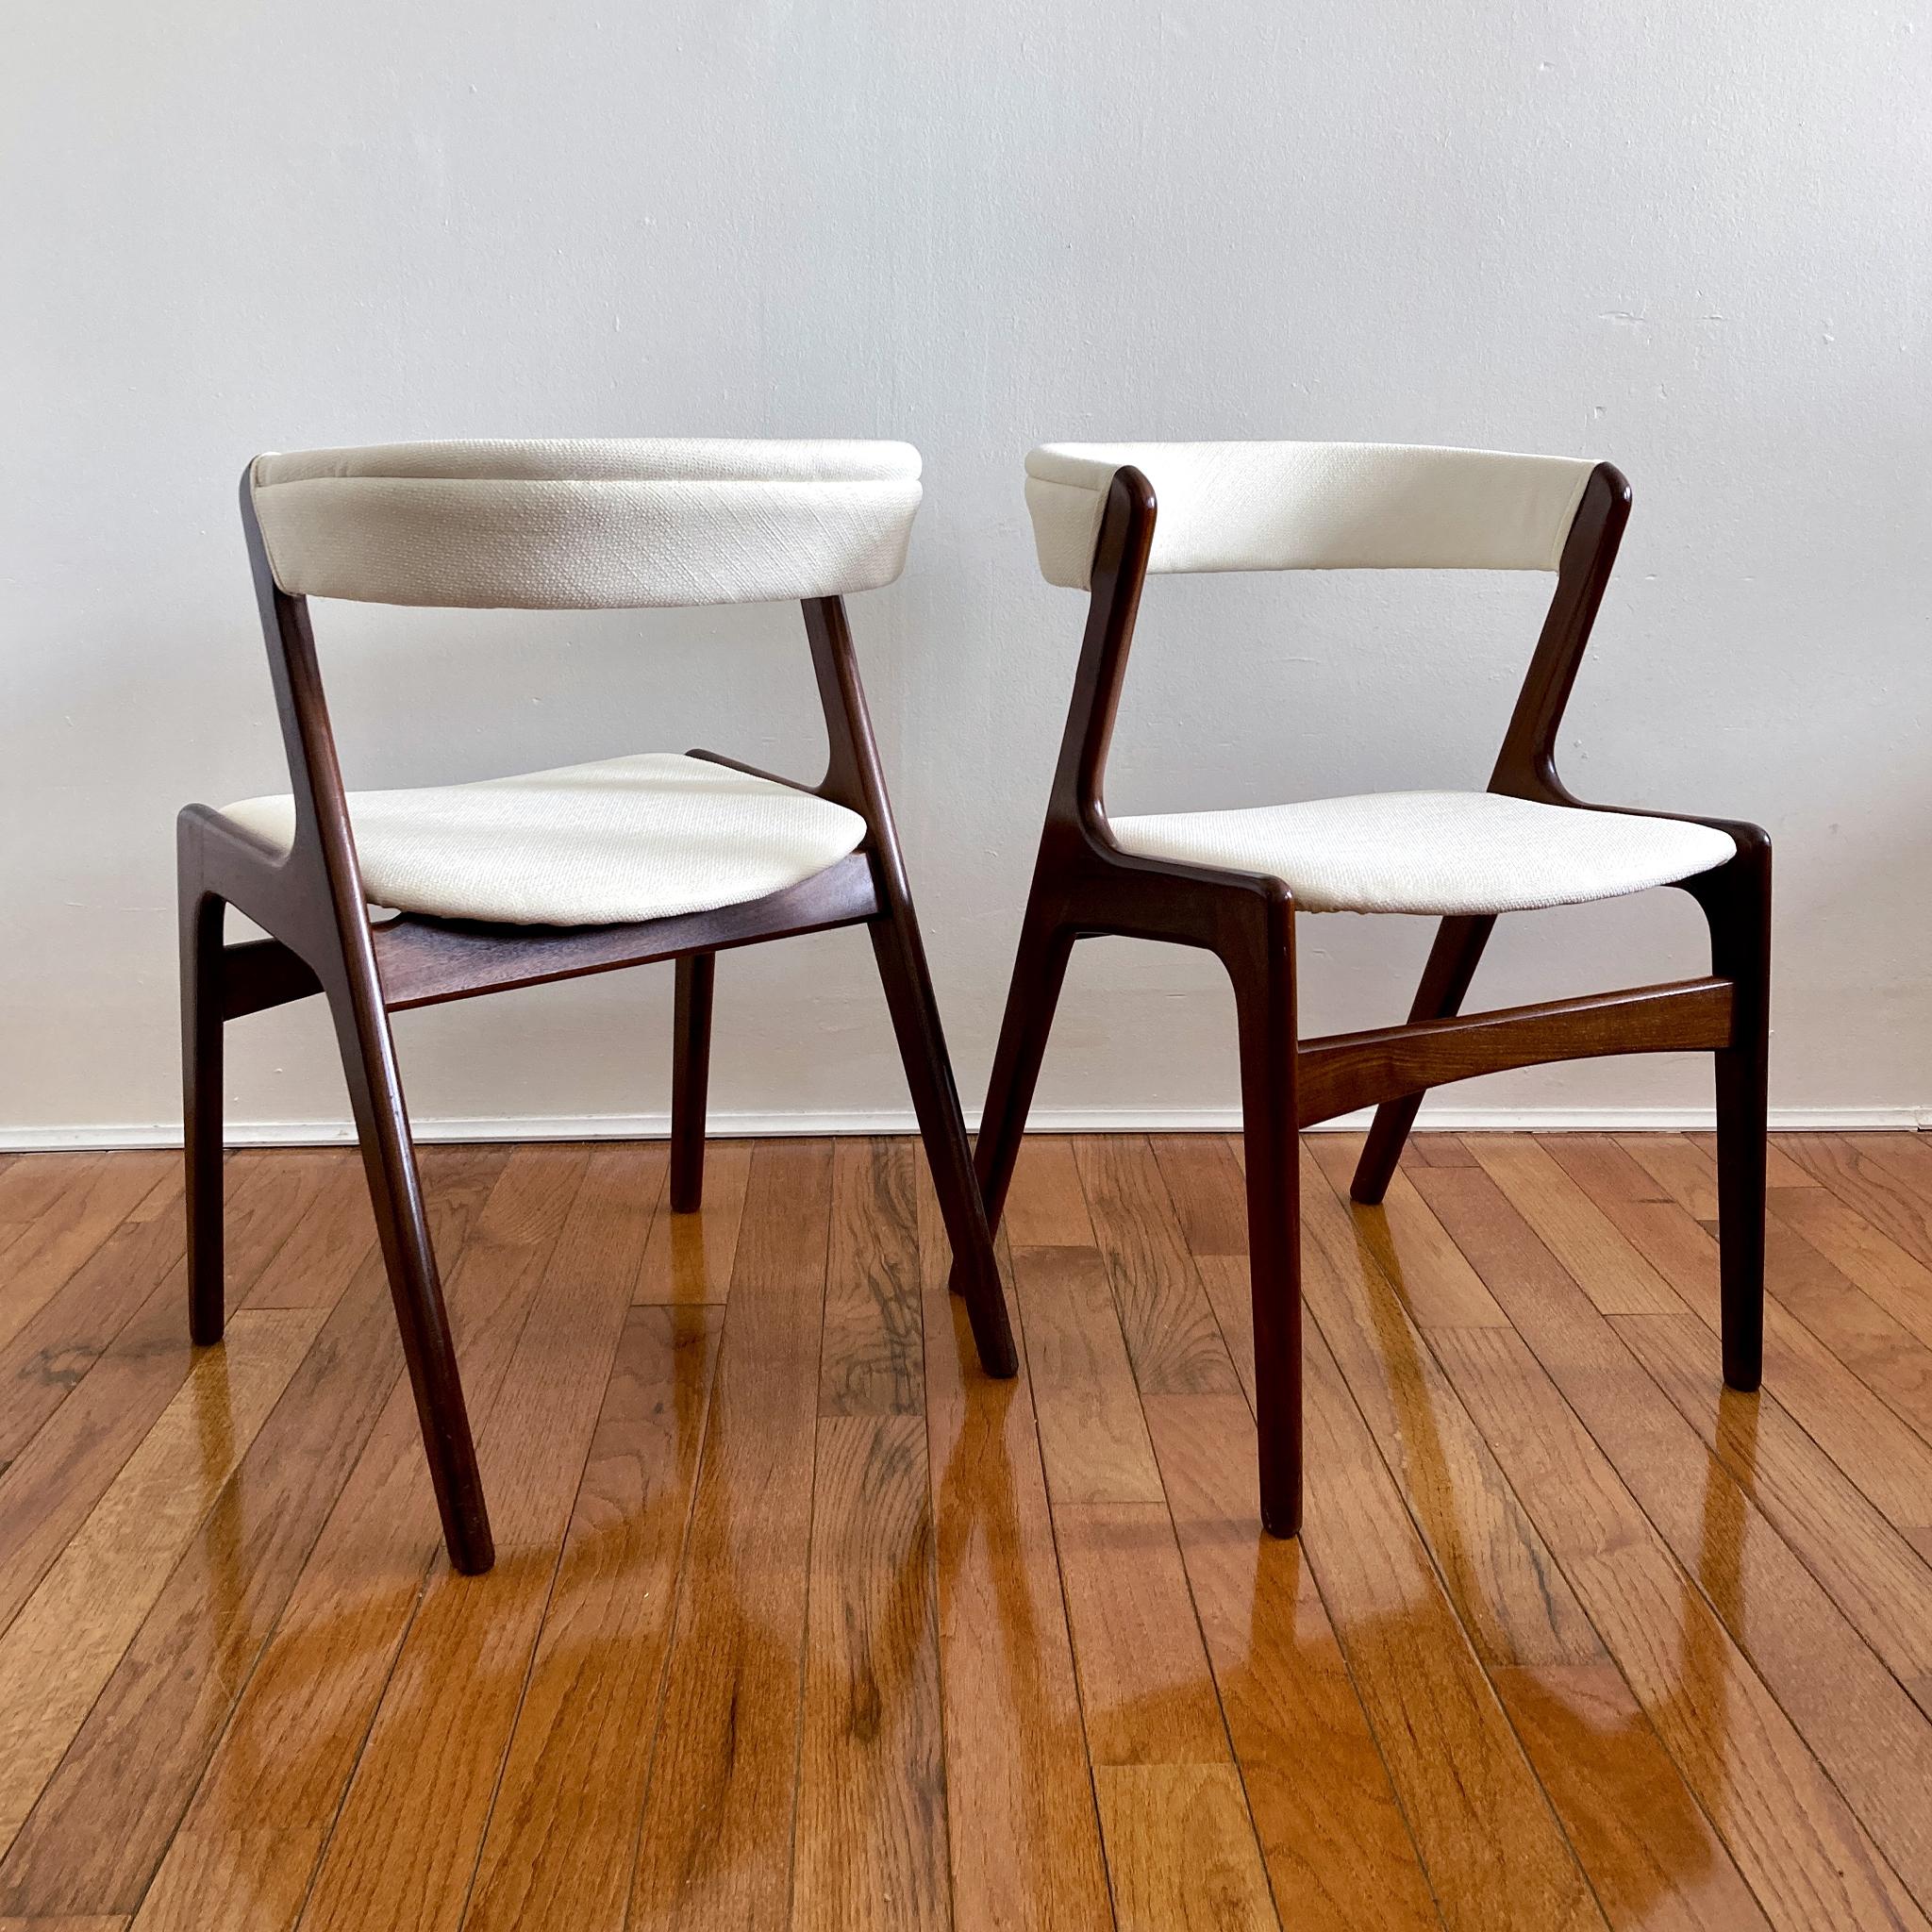 Set mit zwei schönen Stühlen aus der Jahrhundertmitte, Kai Kristiansens ikonischer Stuhl mit geschwungener Rückenlehne Silhouette. Gestell aus Teakholz, Sitz und geschwungene Rückenlehne mit elfenbeinfarbenem Tweed neu gepolstert. Strukturell